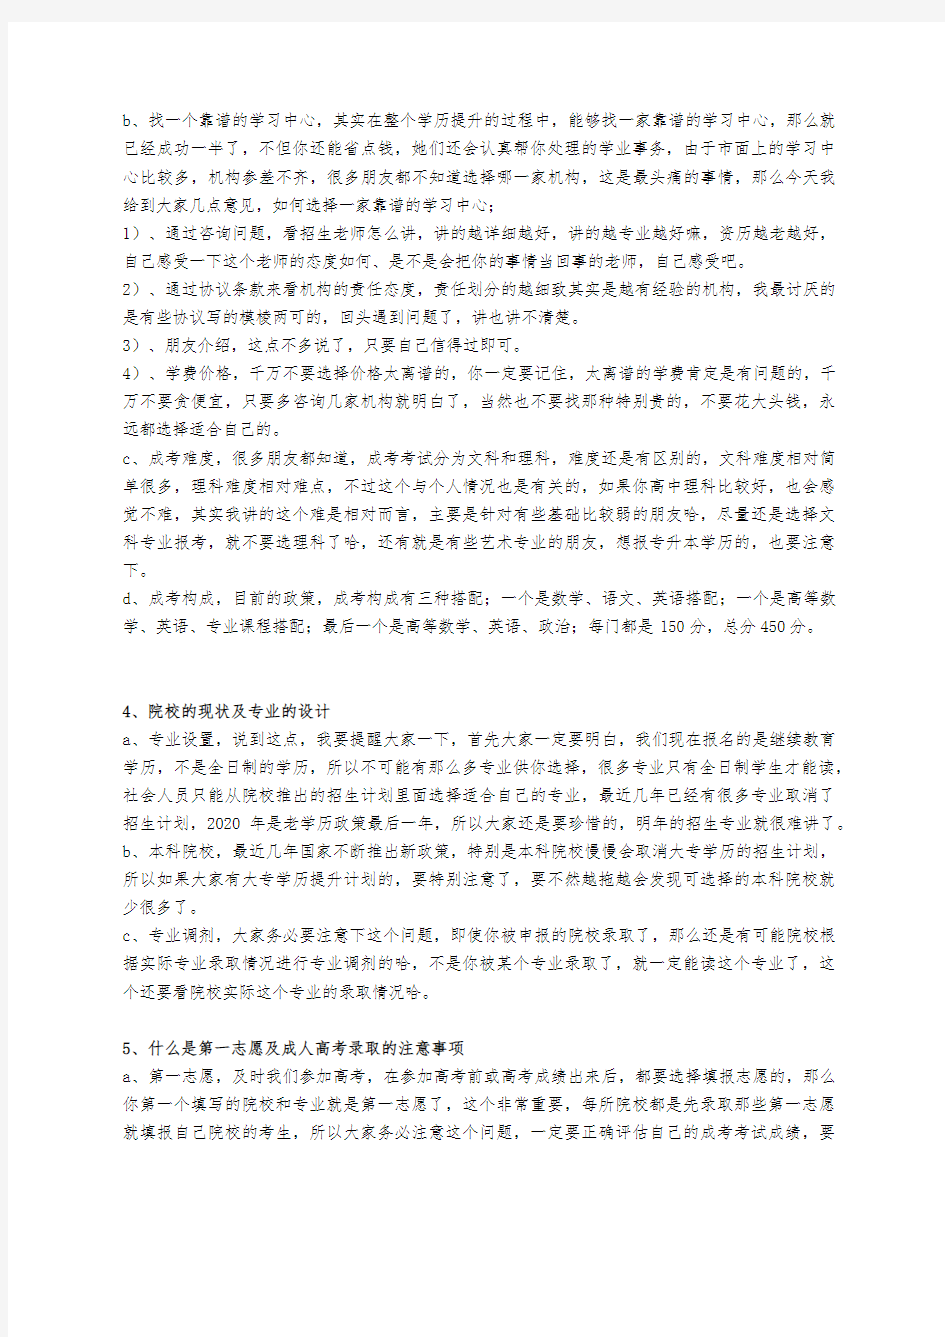 2020浙江省成人学历提升流程